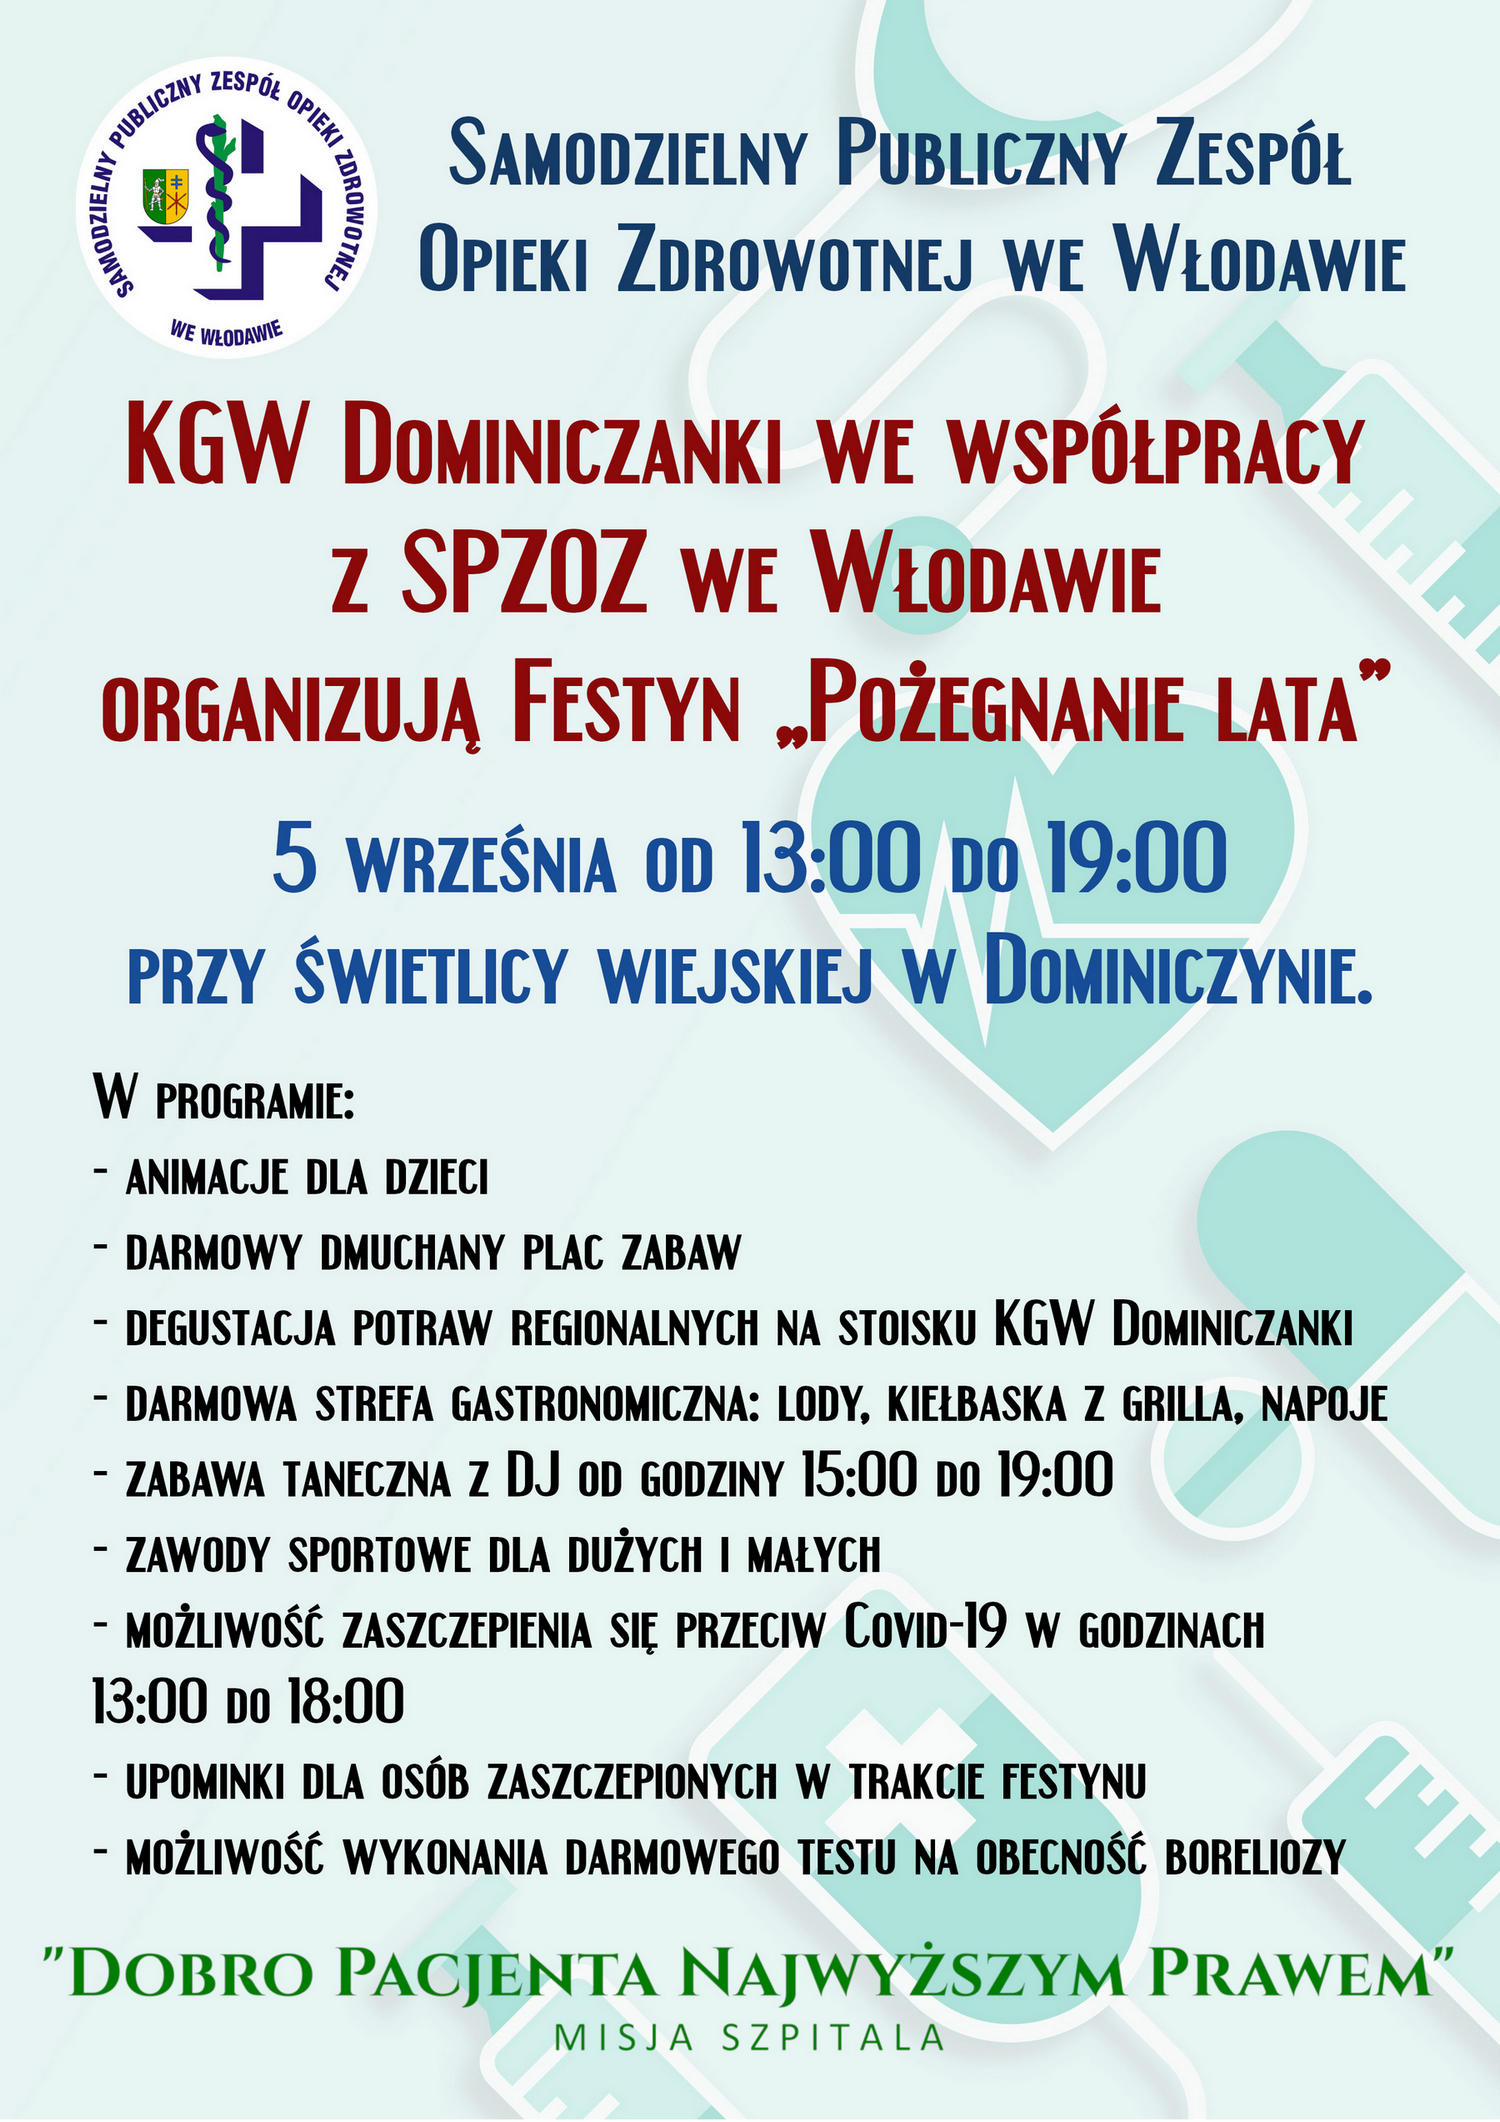 Zaproszenie na festyn organizowany przez KGW Dominiczanki we współpracy z SPZOZ we Włodawie.